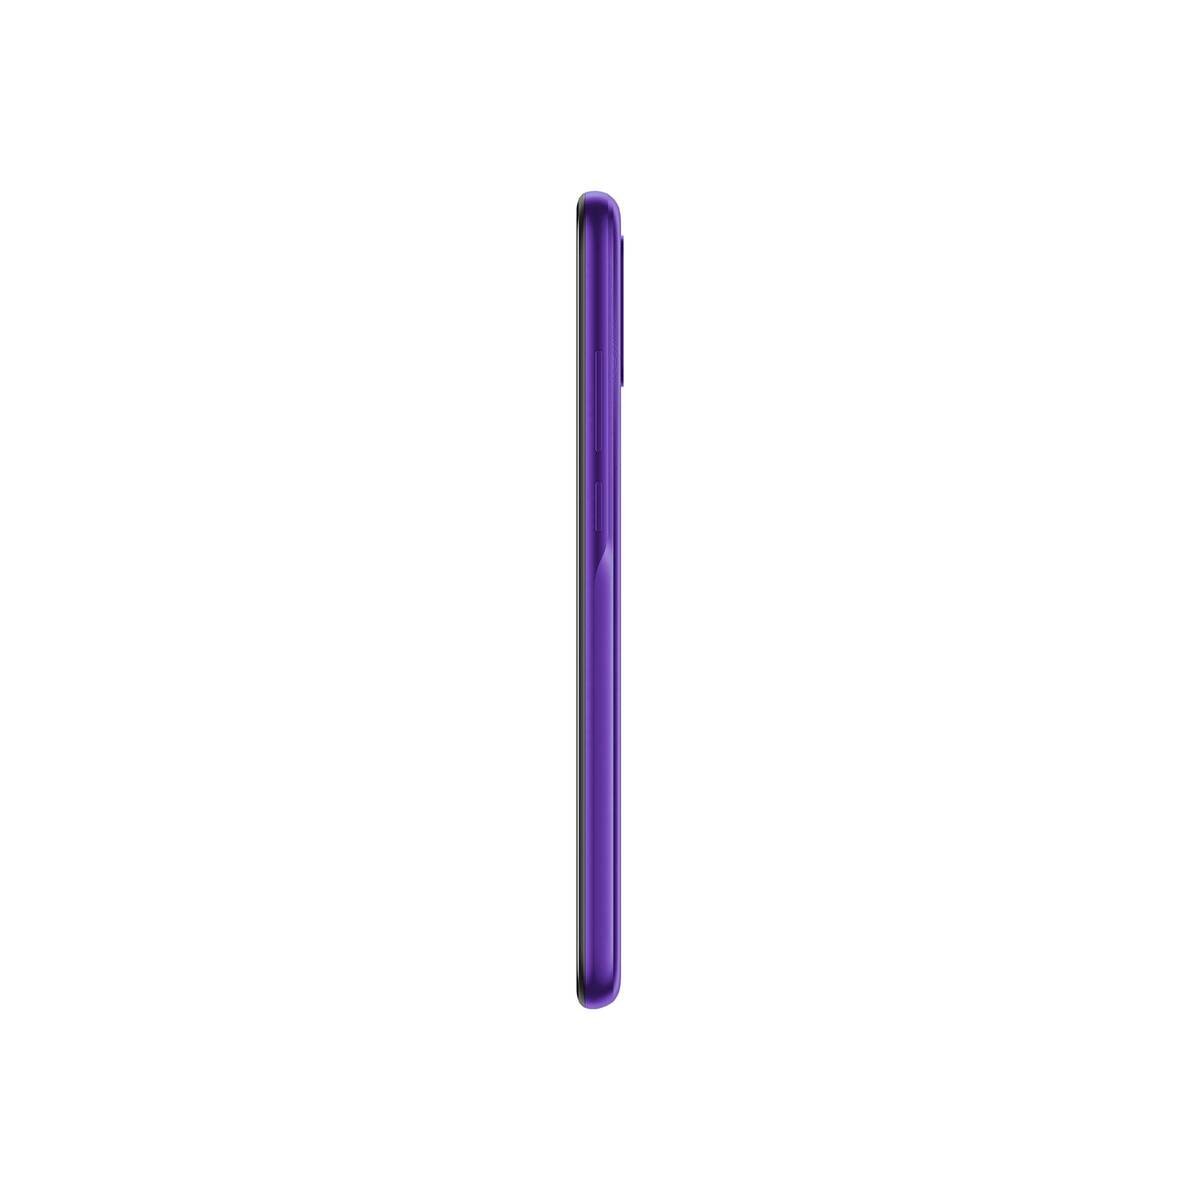 Alcatel 1SE-5030U 64GB Light Purple